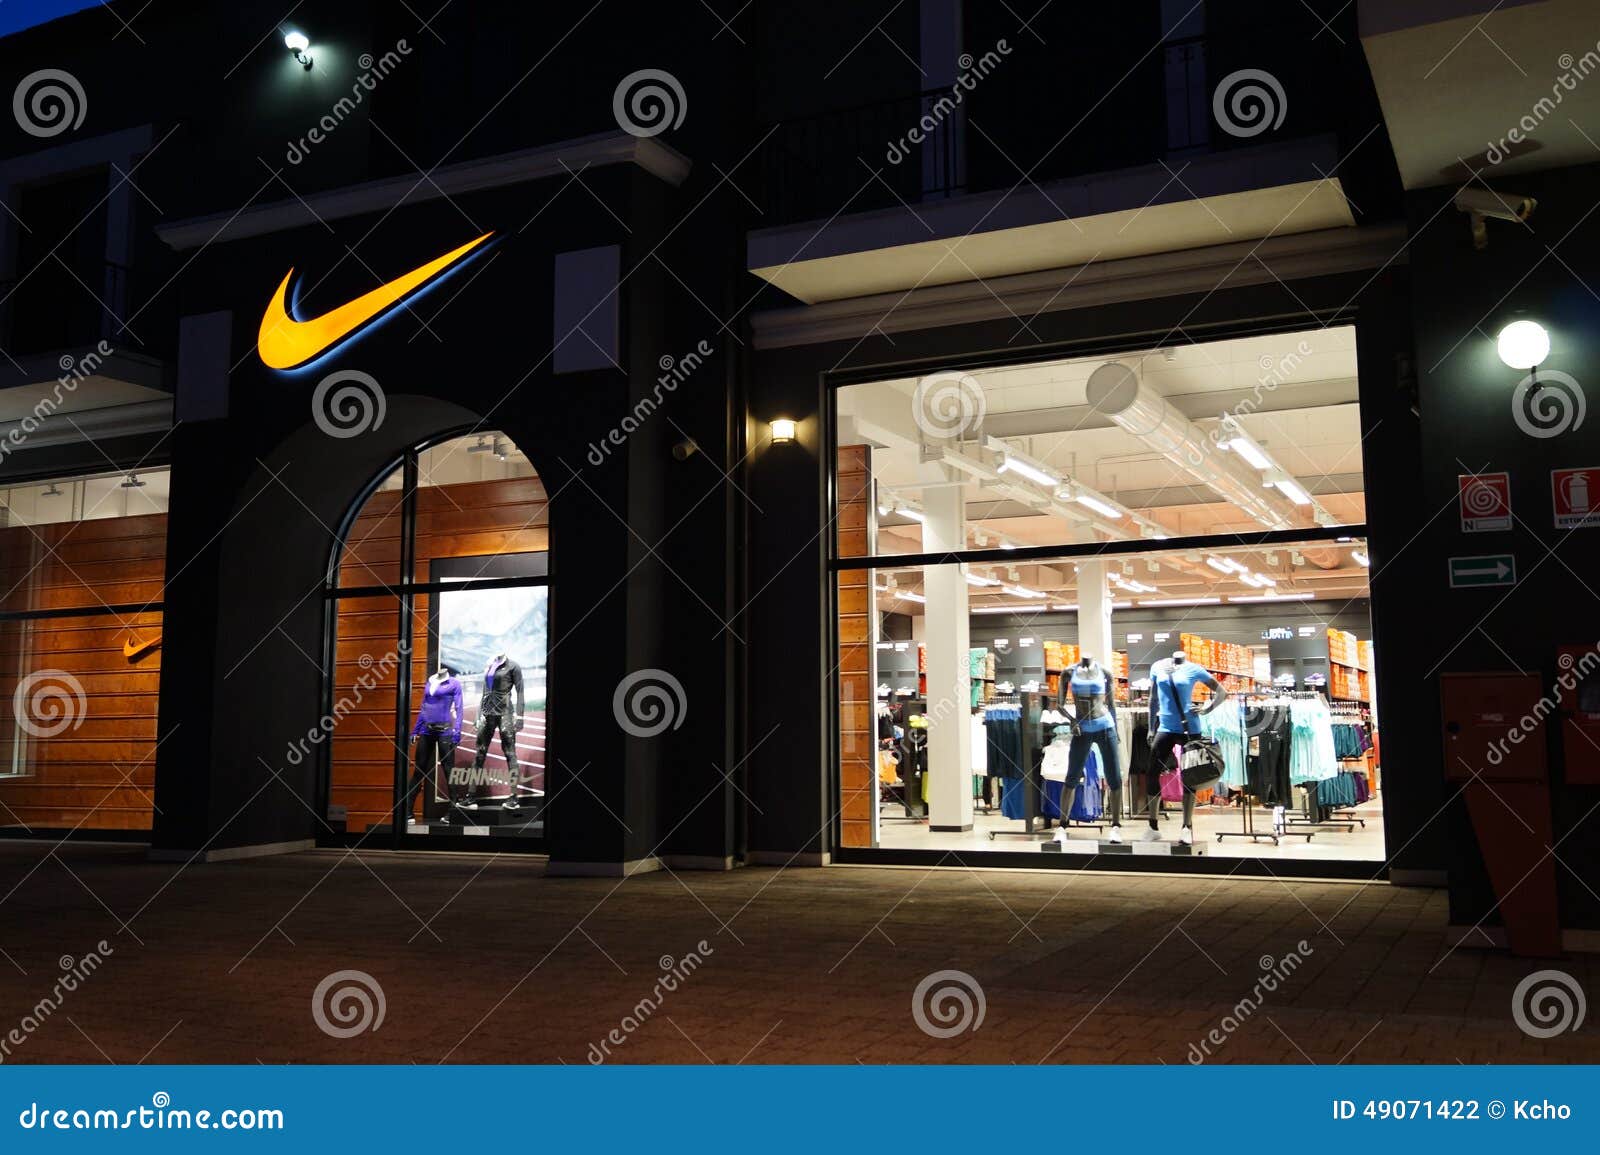 Cosquillas Grafico Nylon Nike Store fotografía editorial. Imagen de expo, mejor - 49071422